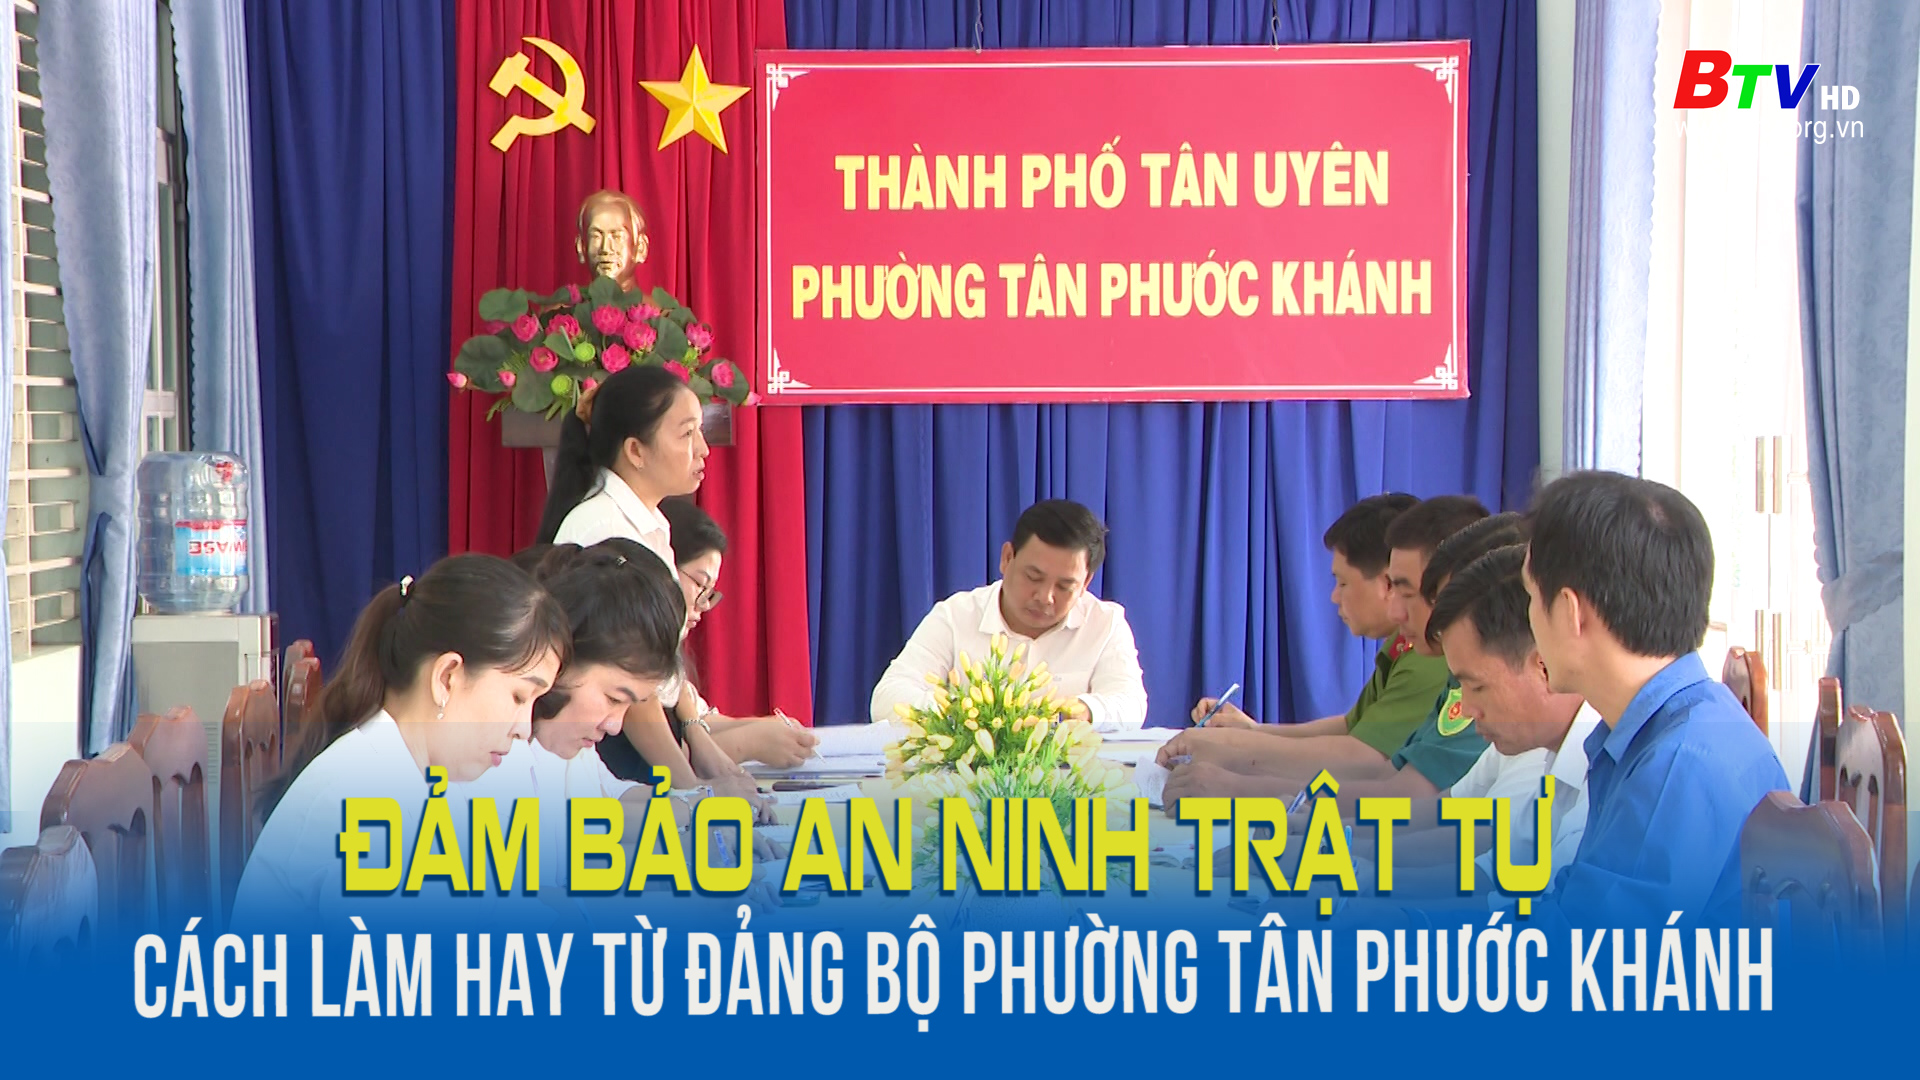 Đảm bảo an ninh trật tự cách làm hay từ Đảng bộ phường Tân Phước Khánh